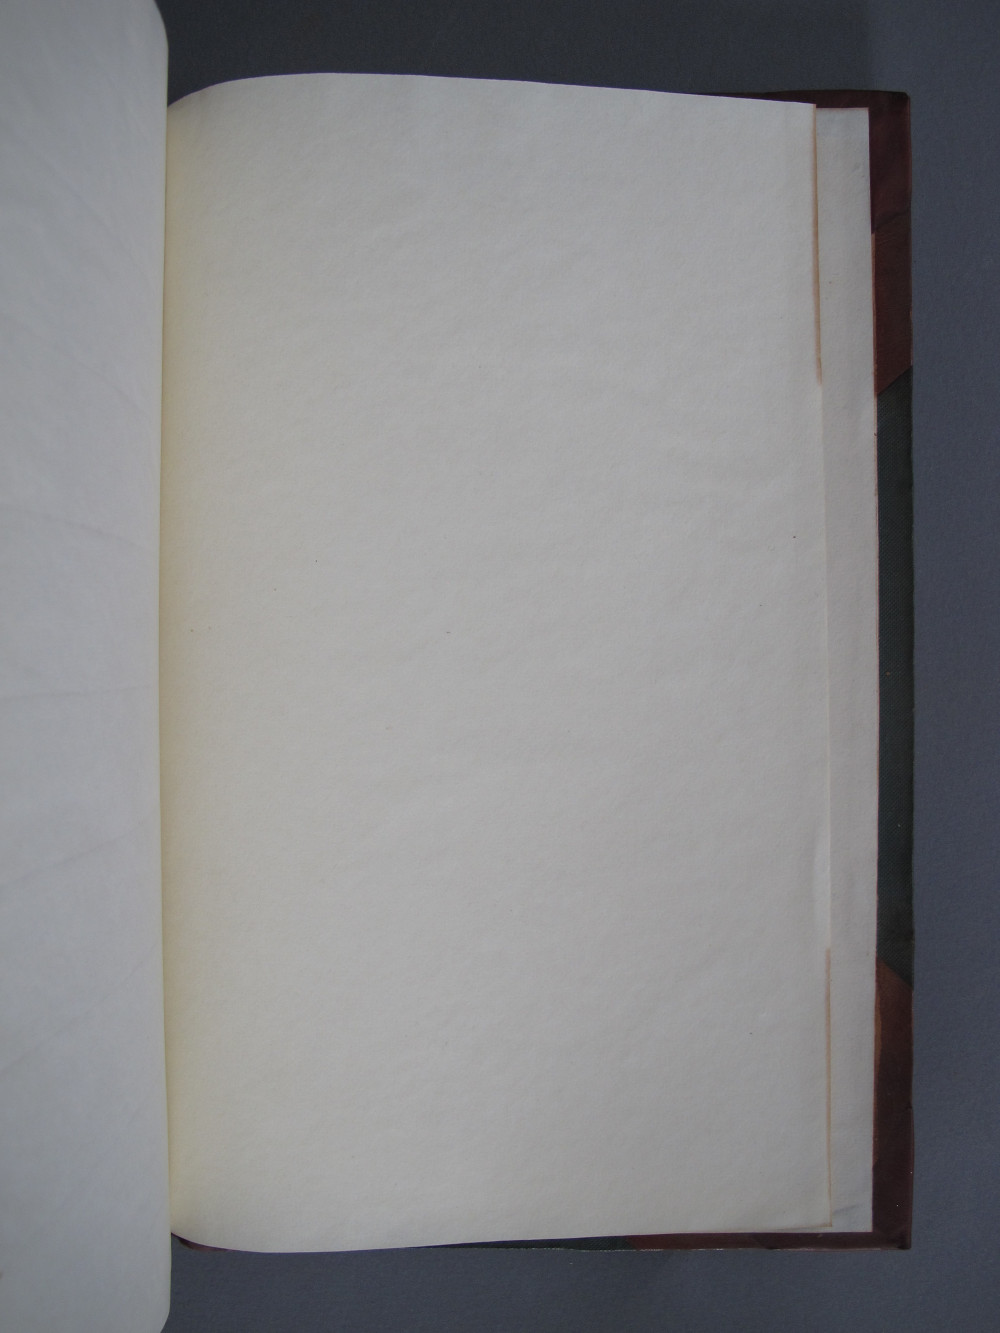 Folio 251 recto